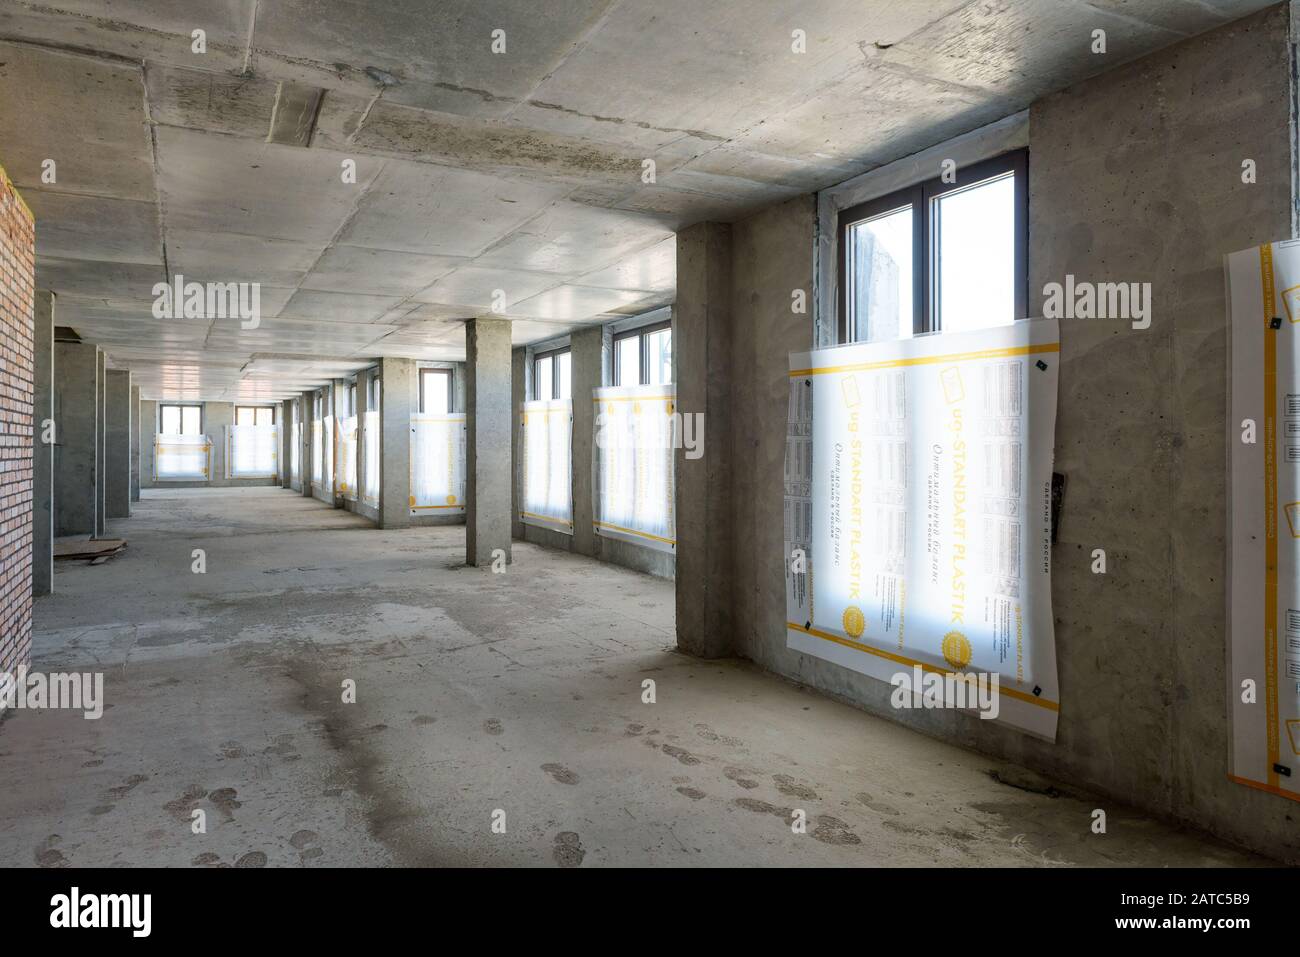 Moskau - 10. August 2017: Innerhalb des Bauwerks mit Betonwänden, Decke und Boden. Panoramablick auf den Korridor der Baustelle Stockfoto